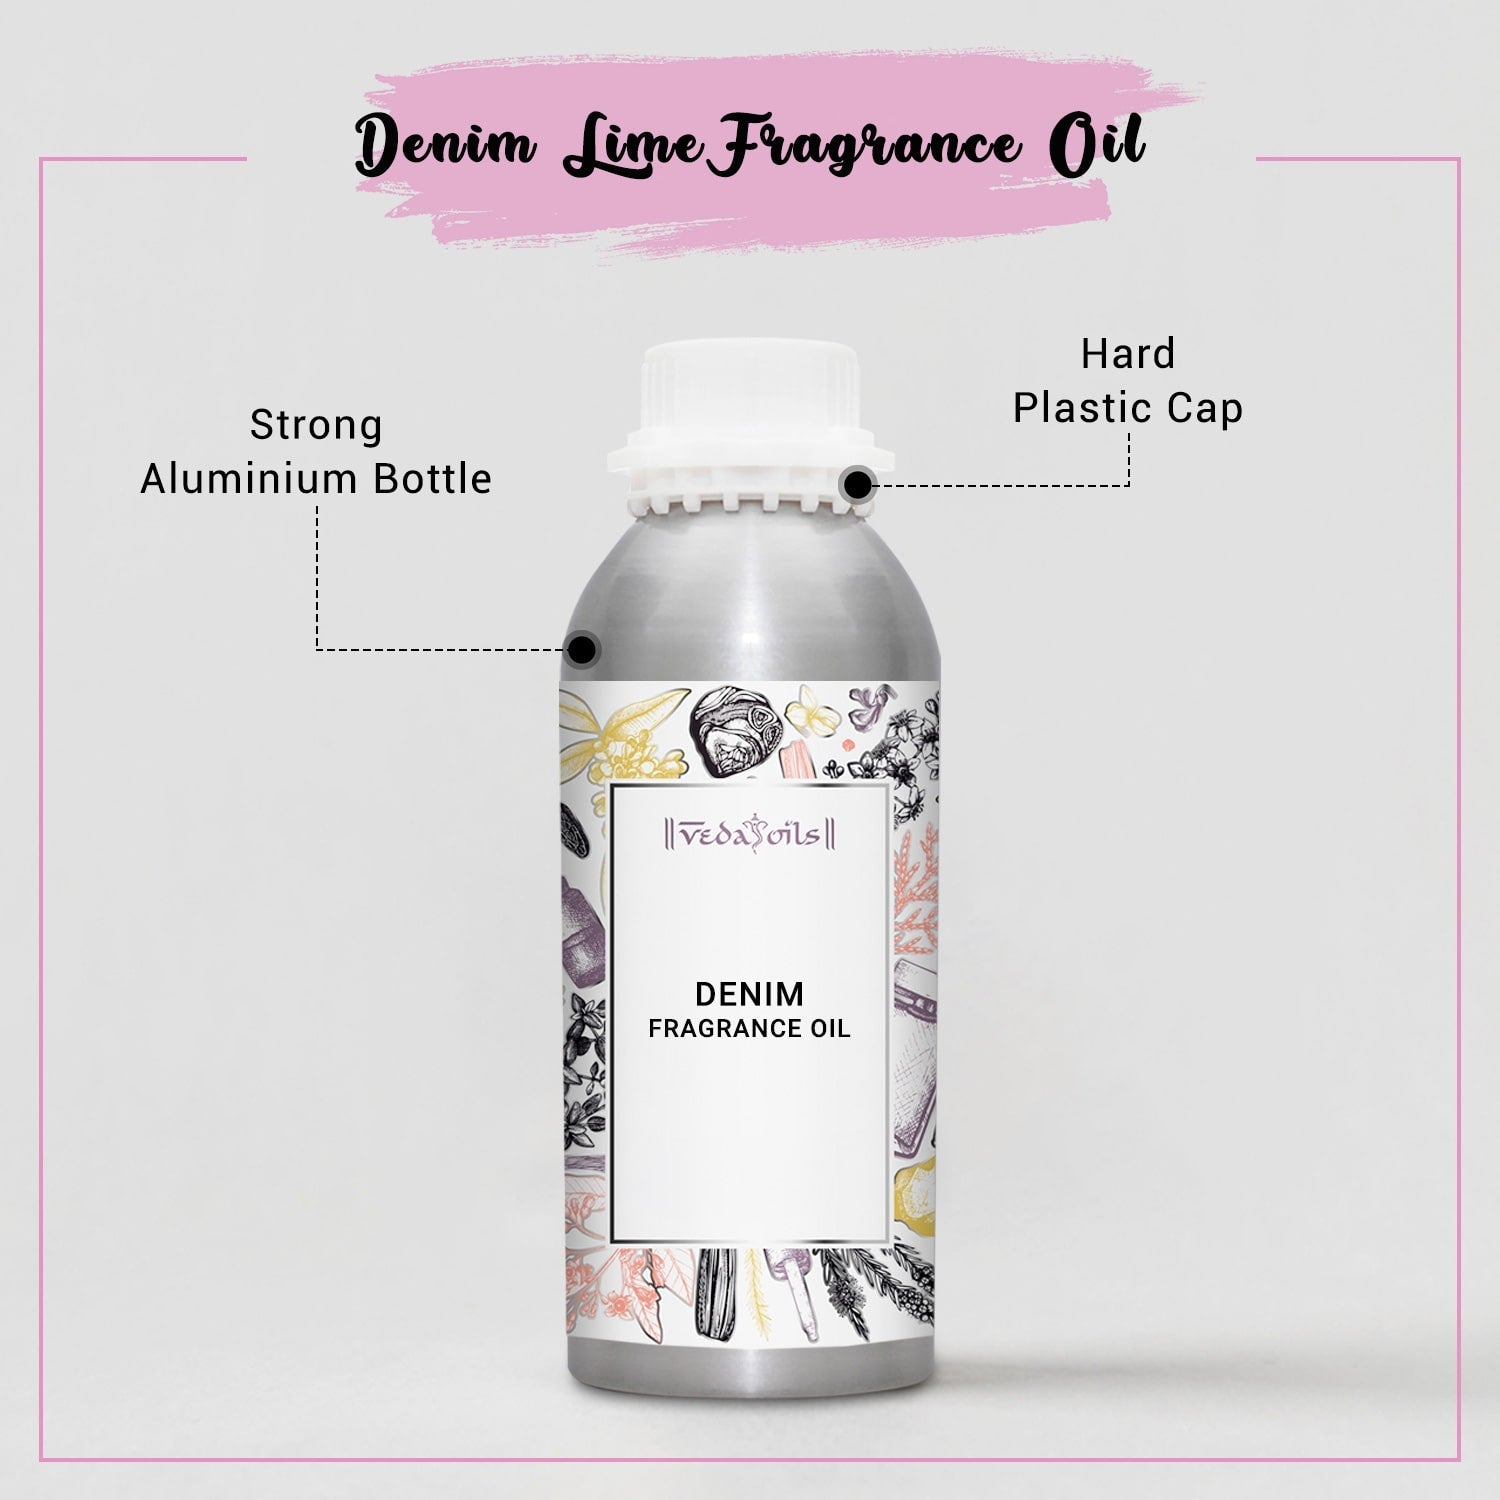 Denim Fragrance Oil